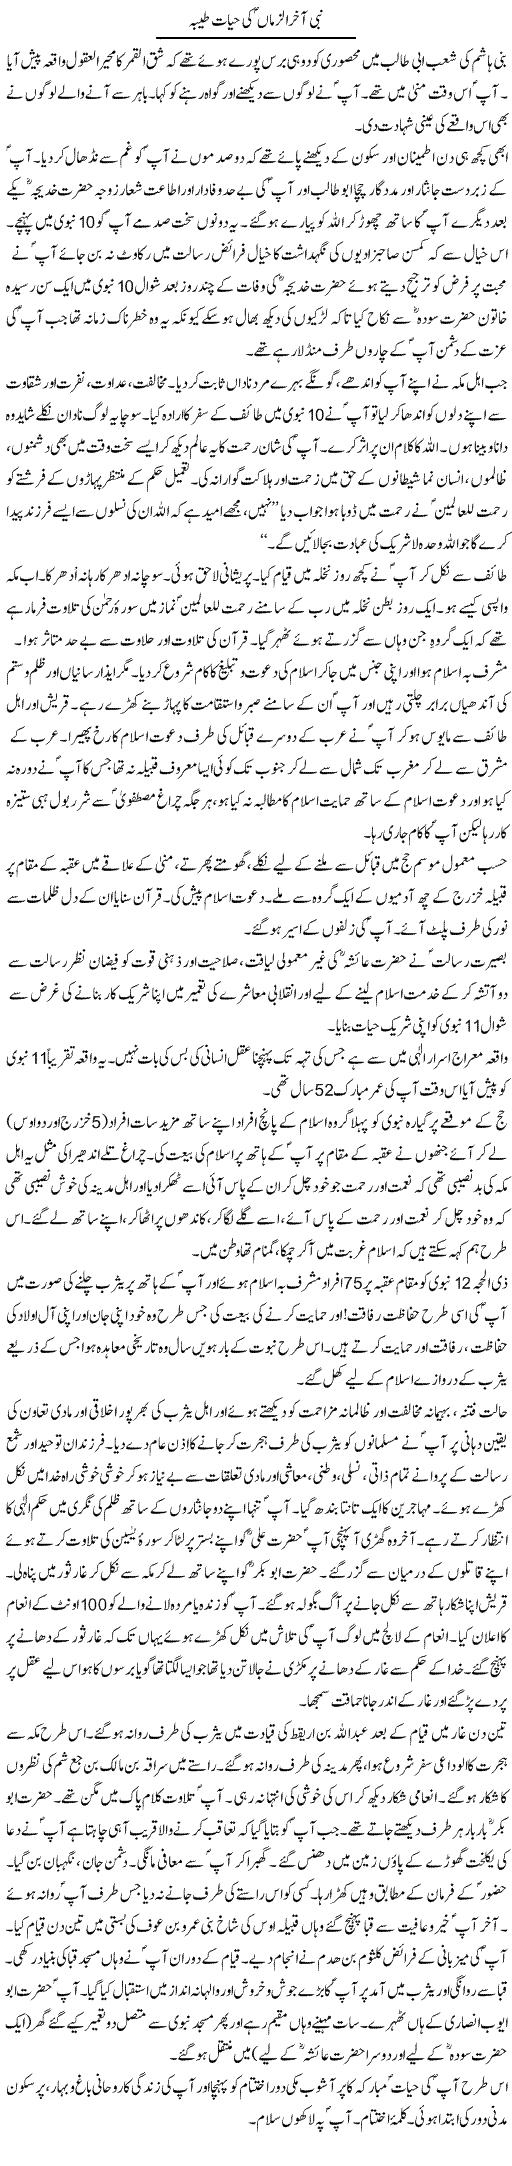 Nabi Akhir Uz Zaman Ki Hayat Tayyaba | Dr. Muhammad Tayyab Khan Singhanvi | Daily Urdu Columns